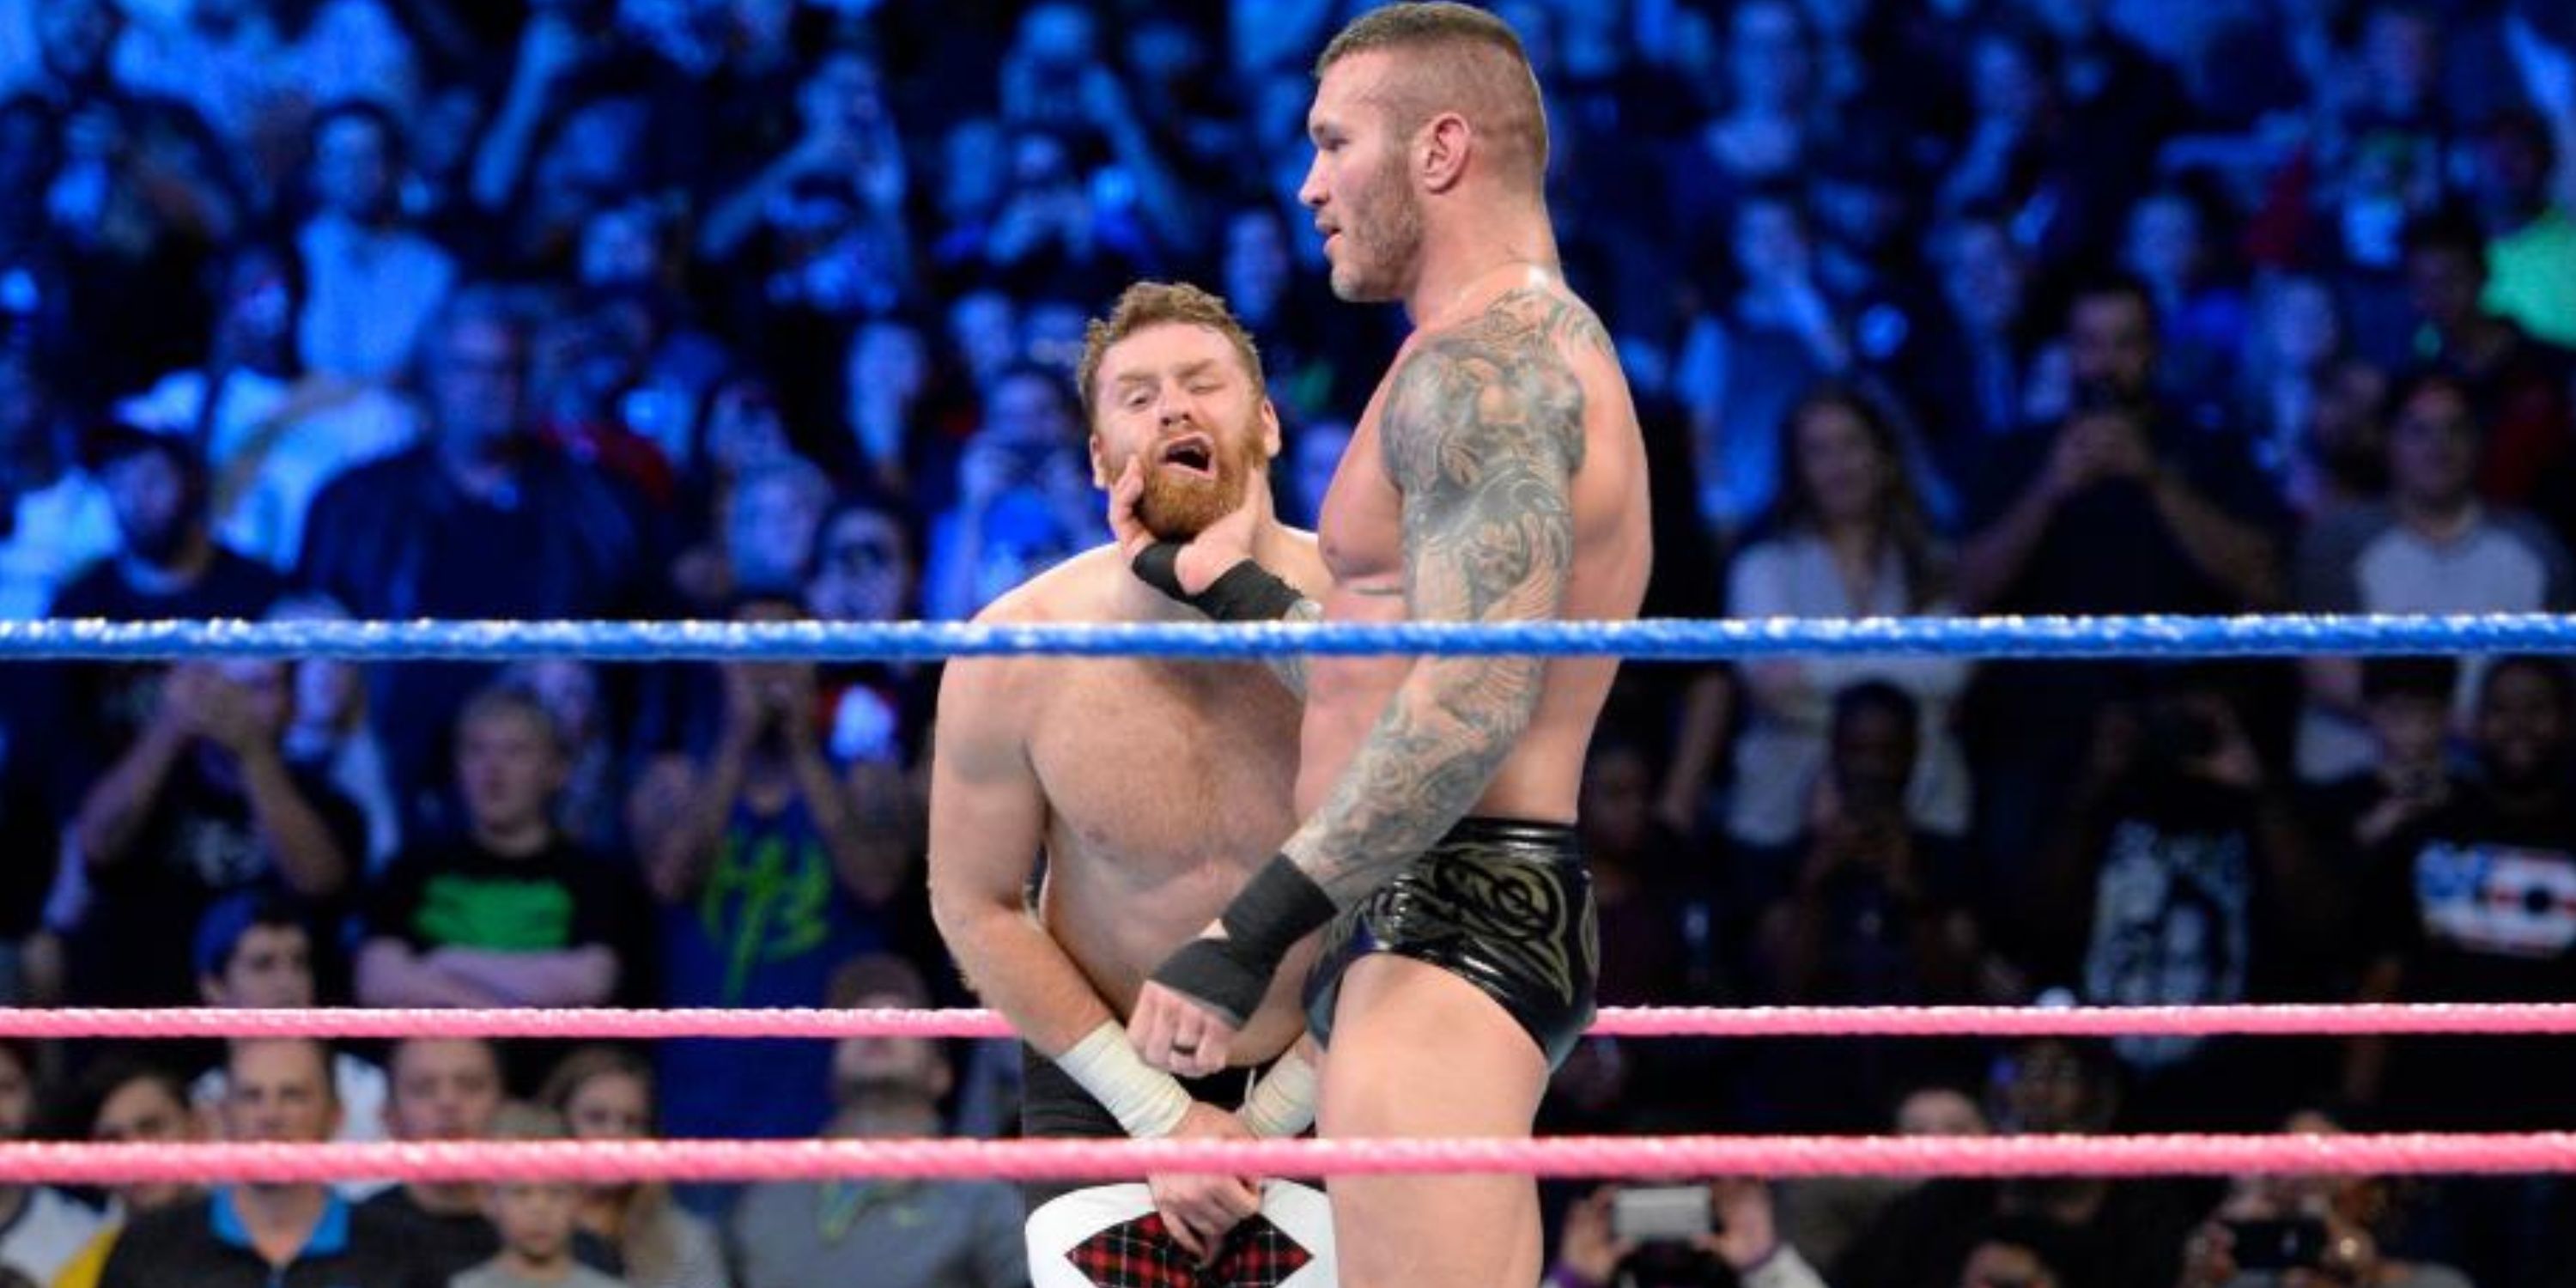 Sami Zayn vs Randy Orton in WWE